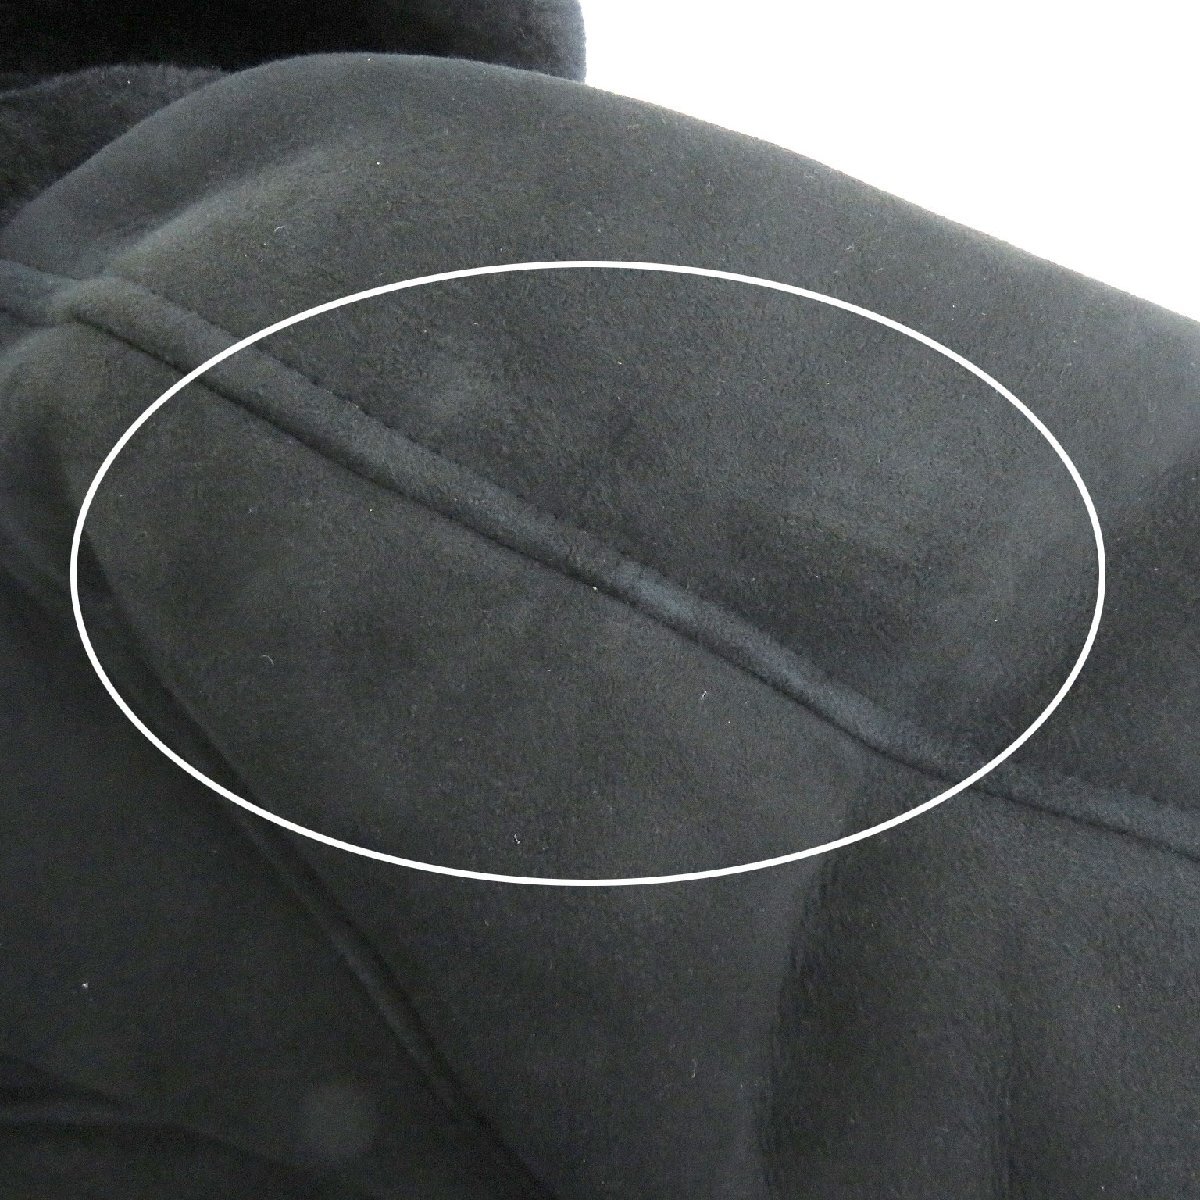  хорошая вещь EMMETI 812767emeti кожа ягненка 100% WZIPf- dead длинное пальто мутоновое пальто темный темно-синий 48 Италия производства стандартный товар мужской 